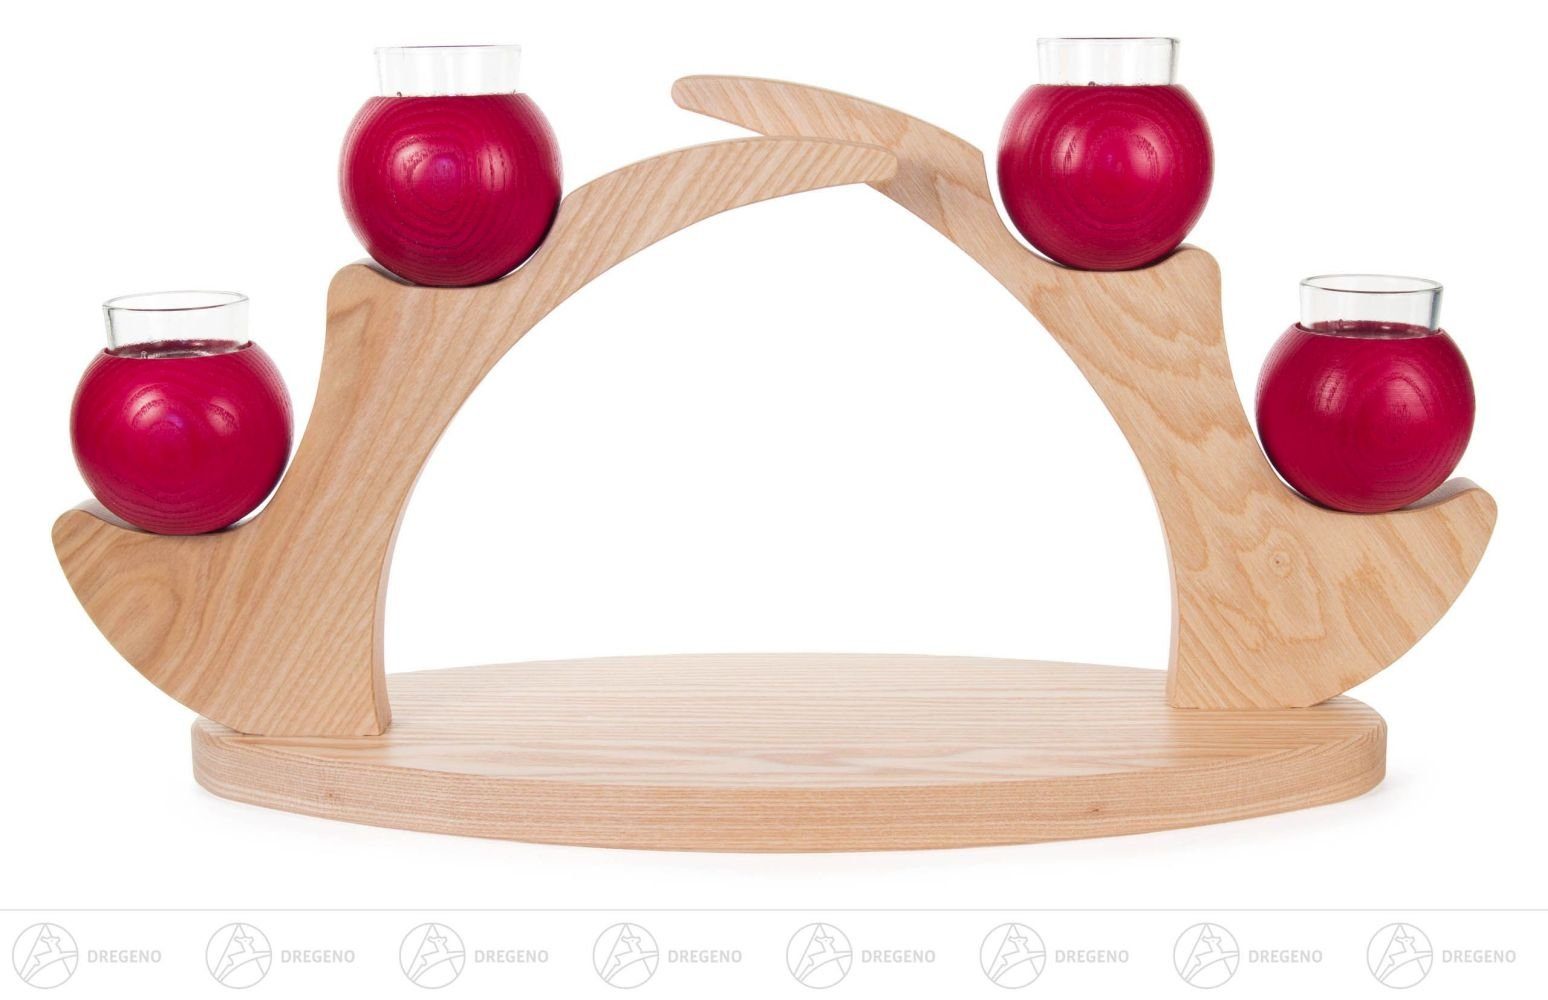 Dregeno Erzgebirge Kerzenhalter Tischleuchter für 4 Kerzen rot, aus Massivholz BxHxT 460 x 240 x 150m, schlichtes schönes Design